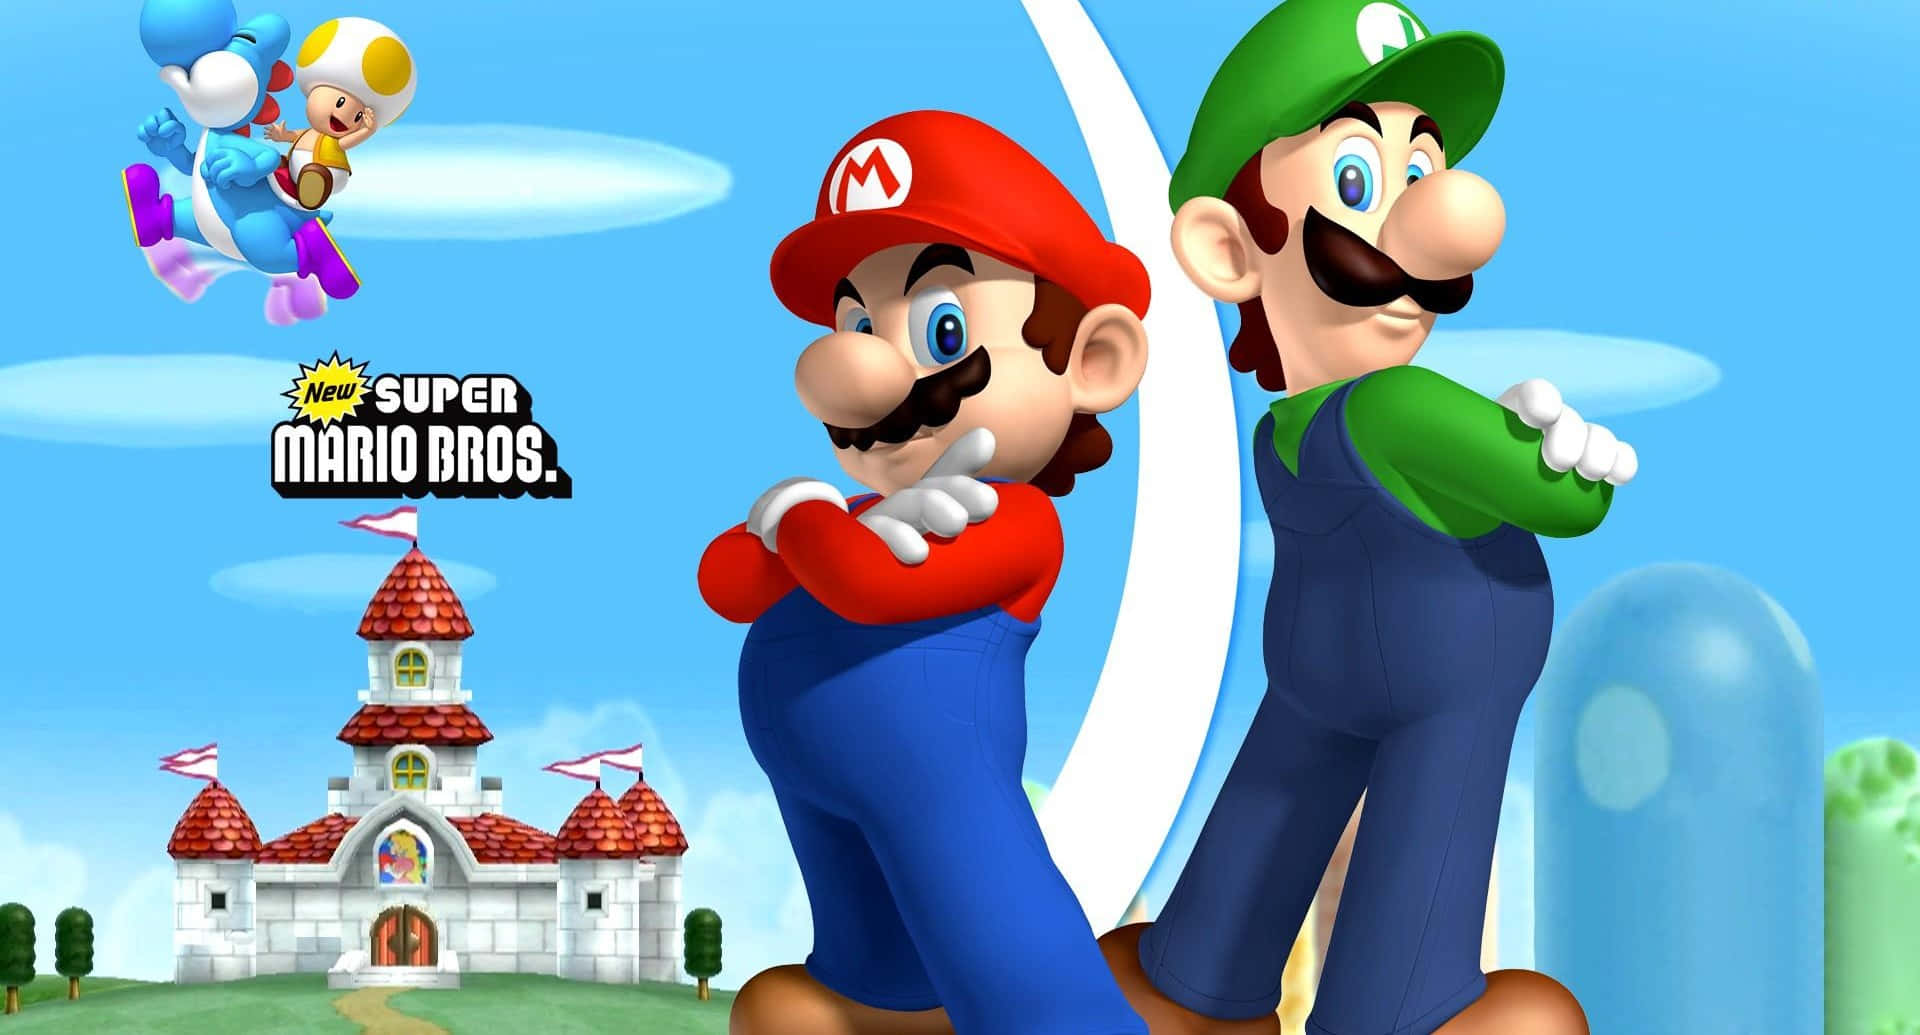 Följmed Mario På Hans Spännande Äventyr!